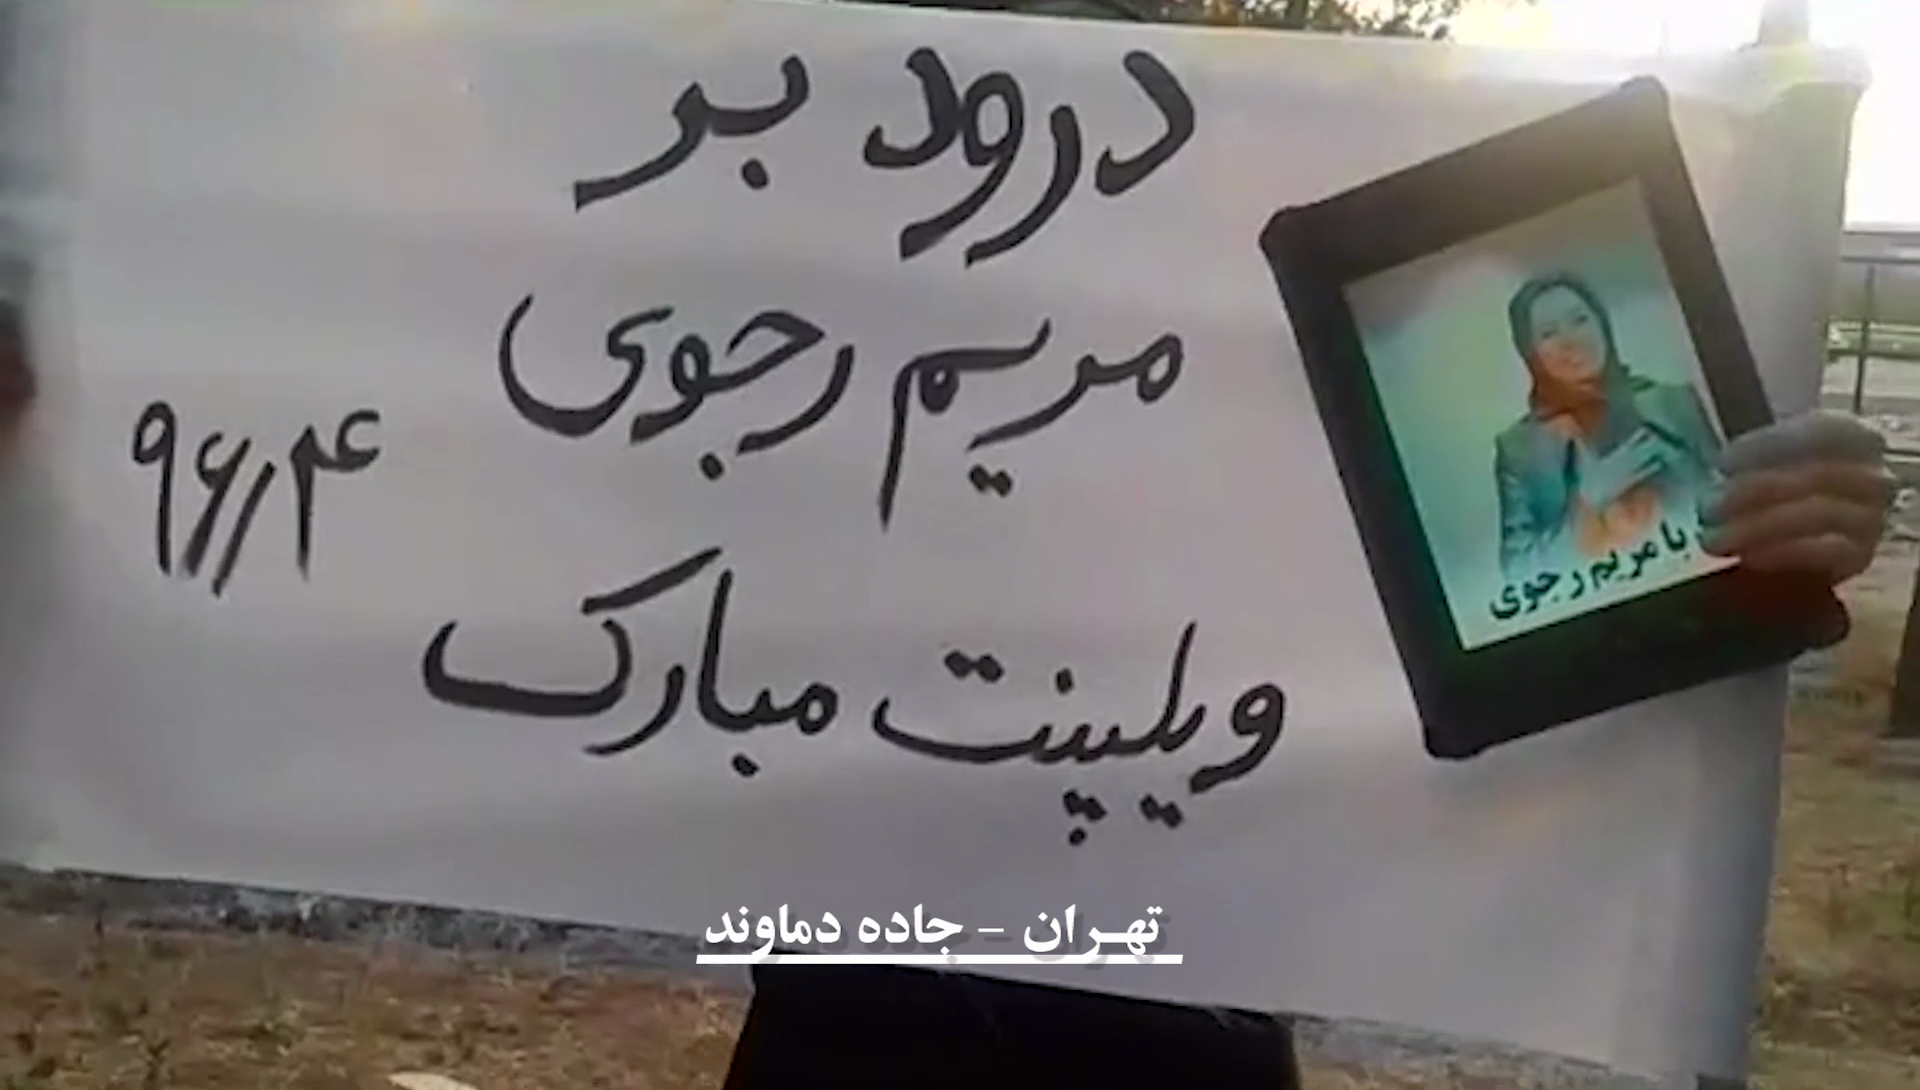 تهران: جاده دماوند - توزیع پلاکارد با شعار درود بر مریم رجوی، ویلپنت مبارک تیرماه 96